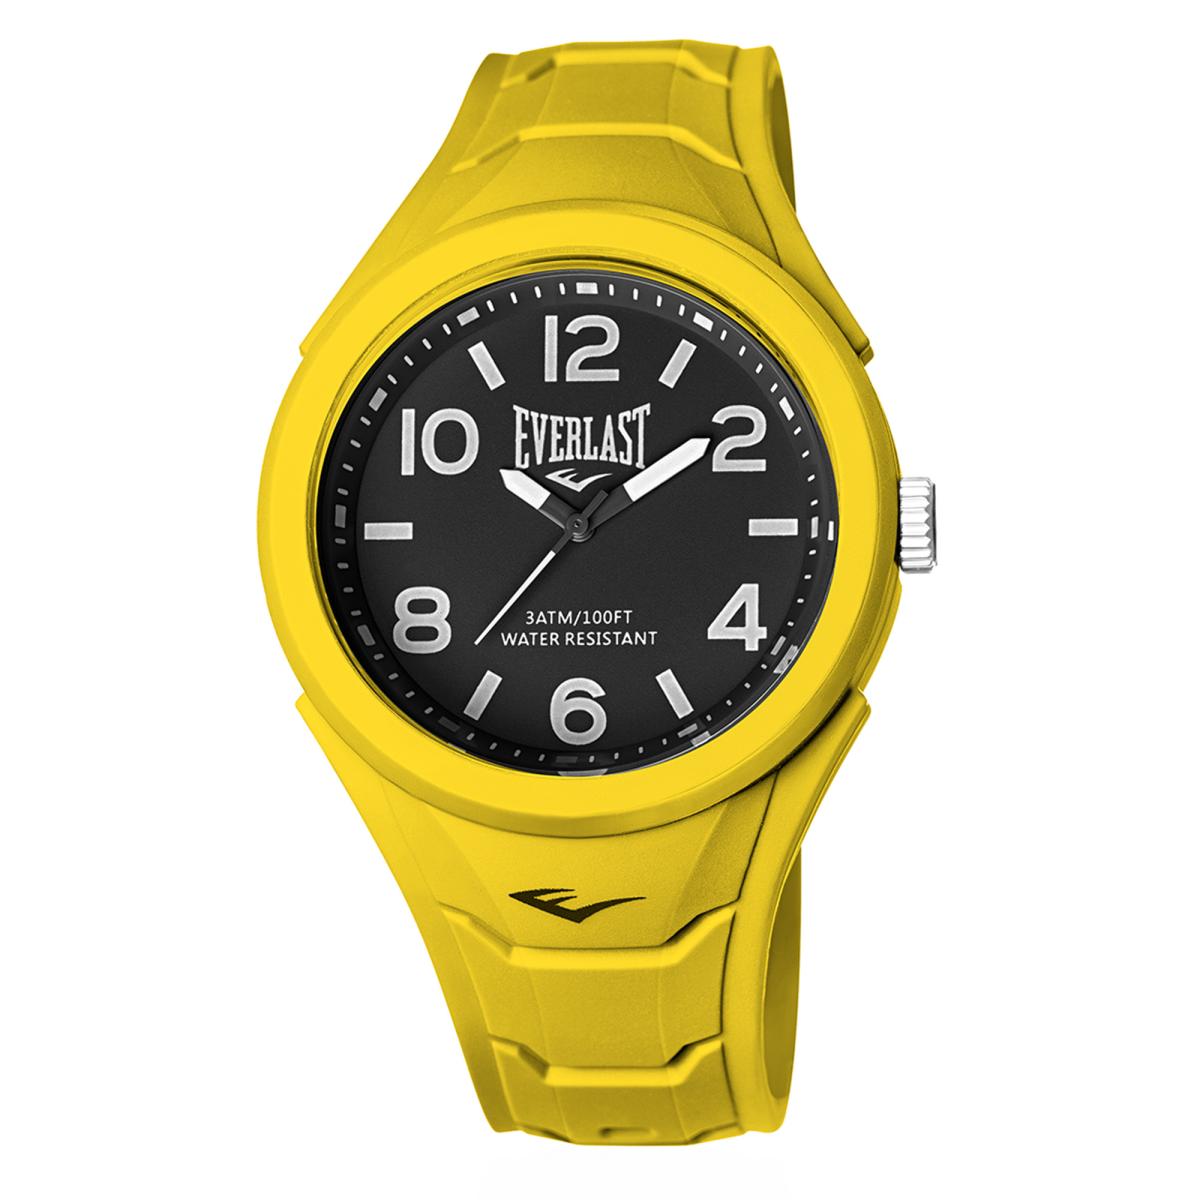 Relógio Masculino Everlast Dourado E629 - Atacado Relogios de Fabrica